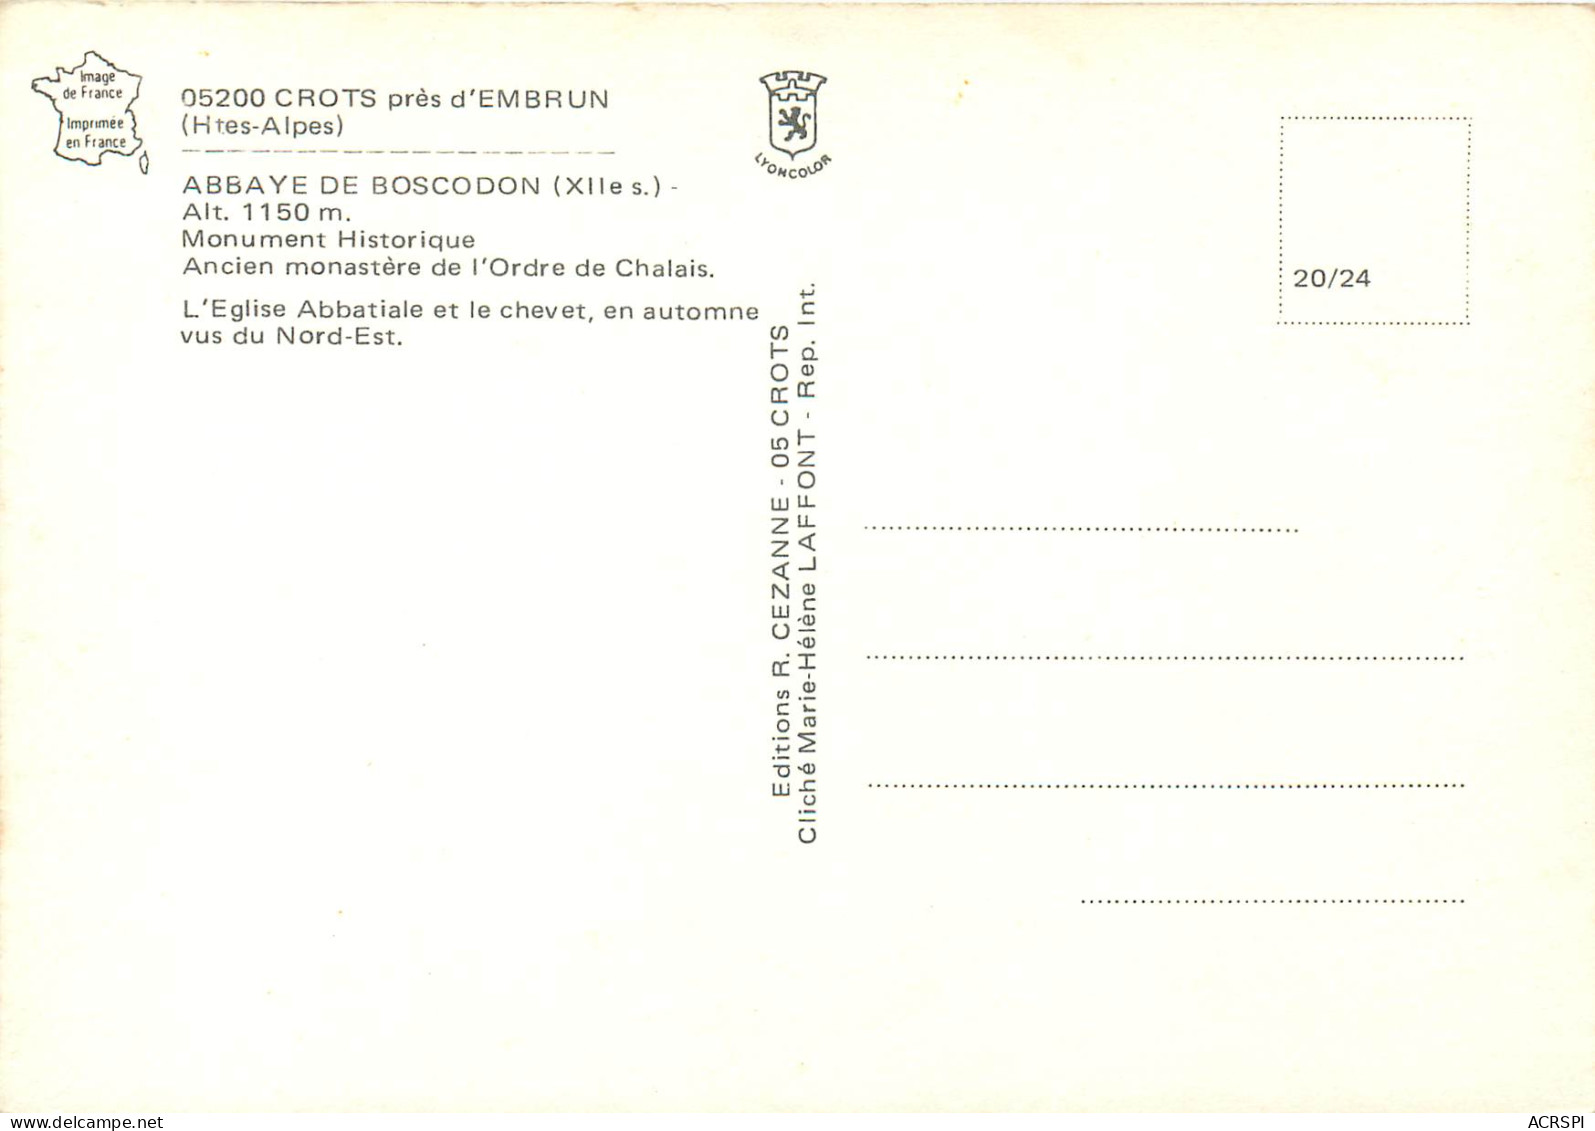 CROTS Pres D EMBRUN Abbaye De Boscodon Monument Historique 3 (scan Recto Verso)ME2651 - Embrun